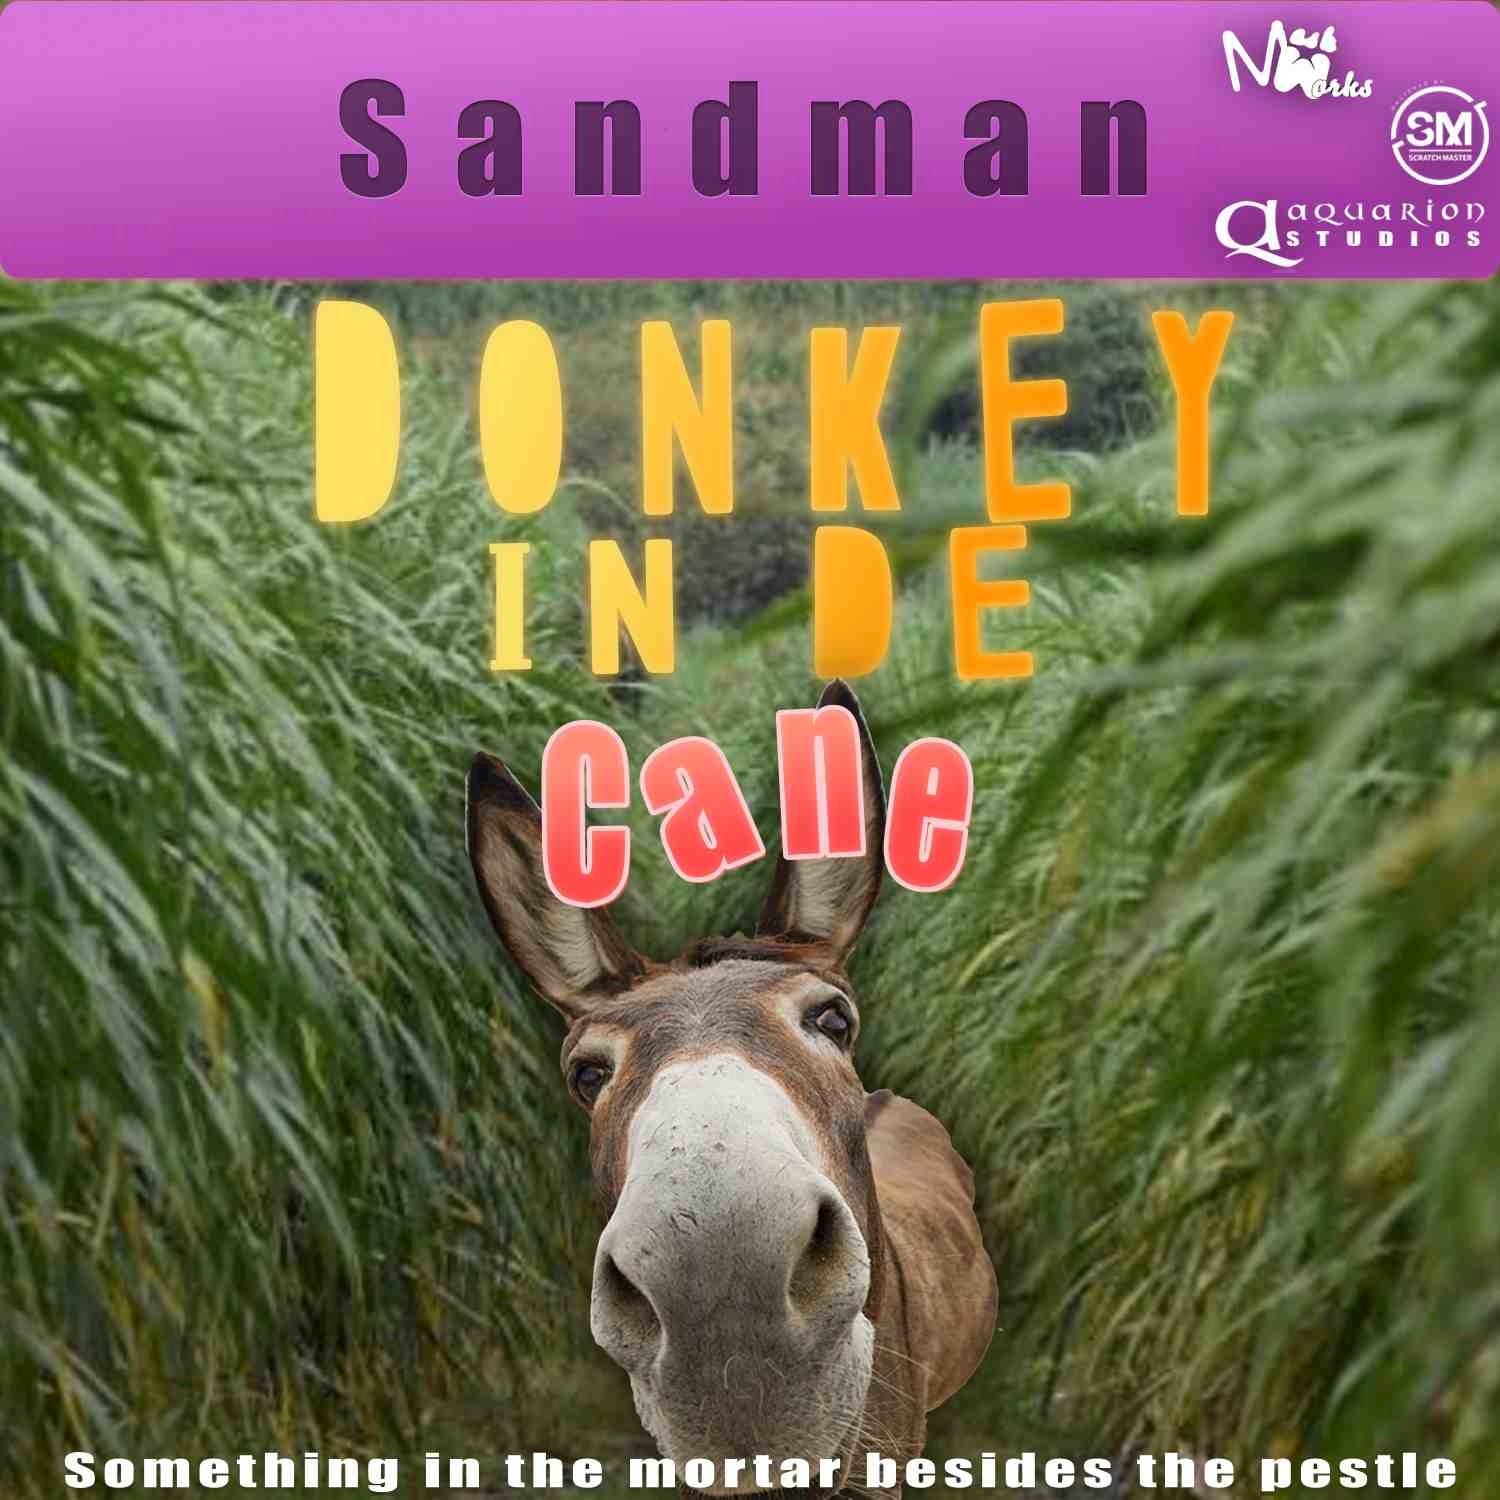 Donkey in De Cane